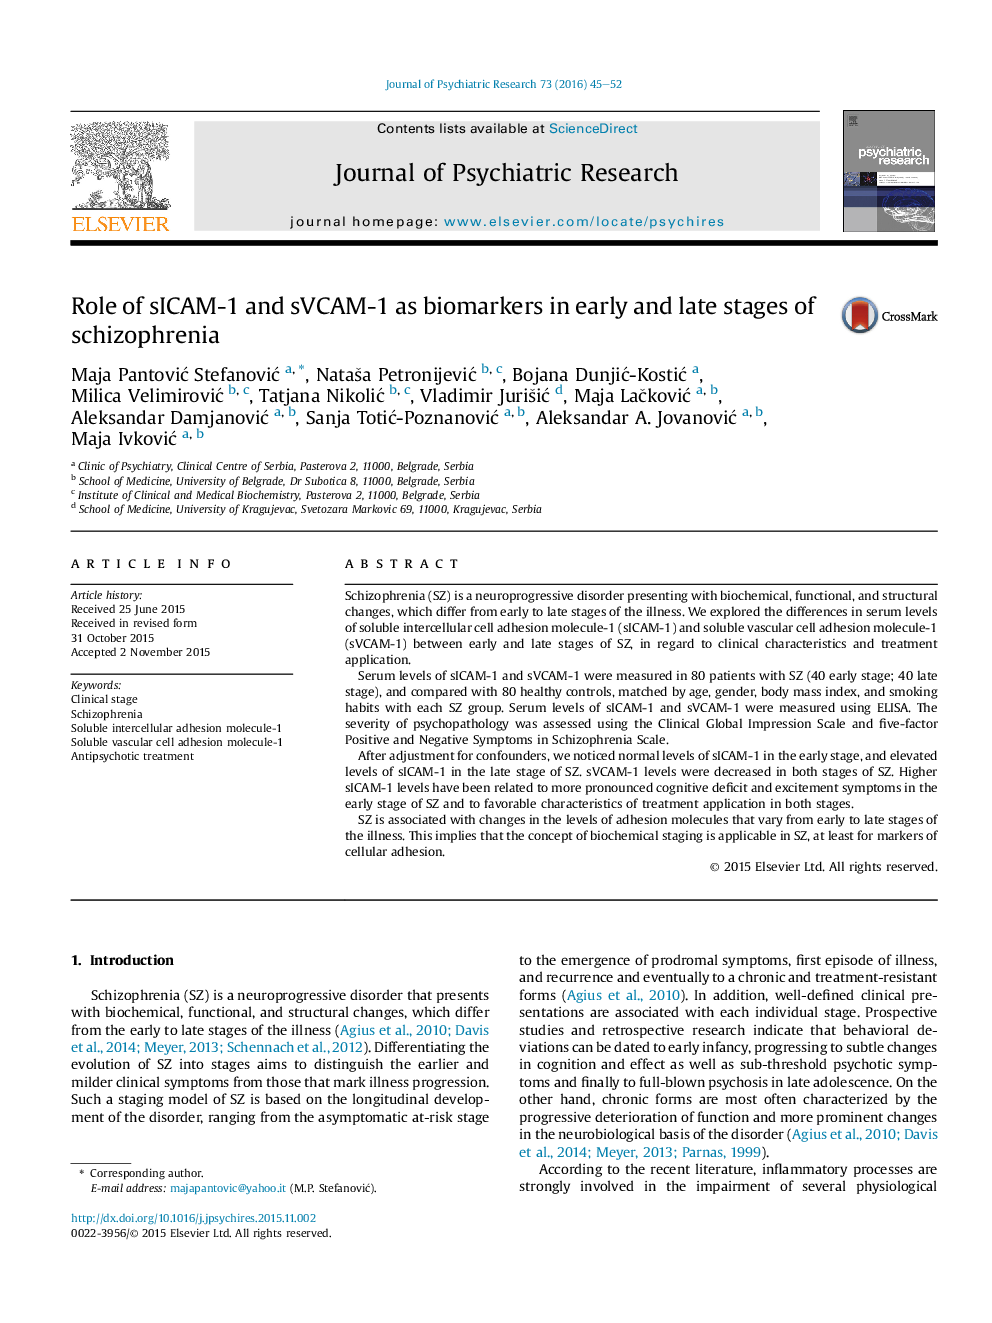 نقش sICAM-1 و sVCAM-1 به عنوان نشانگرهای زیستی در مراحل اول و آخر اسکیزوفرنی